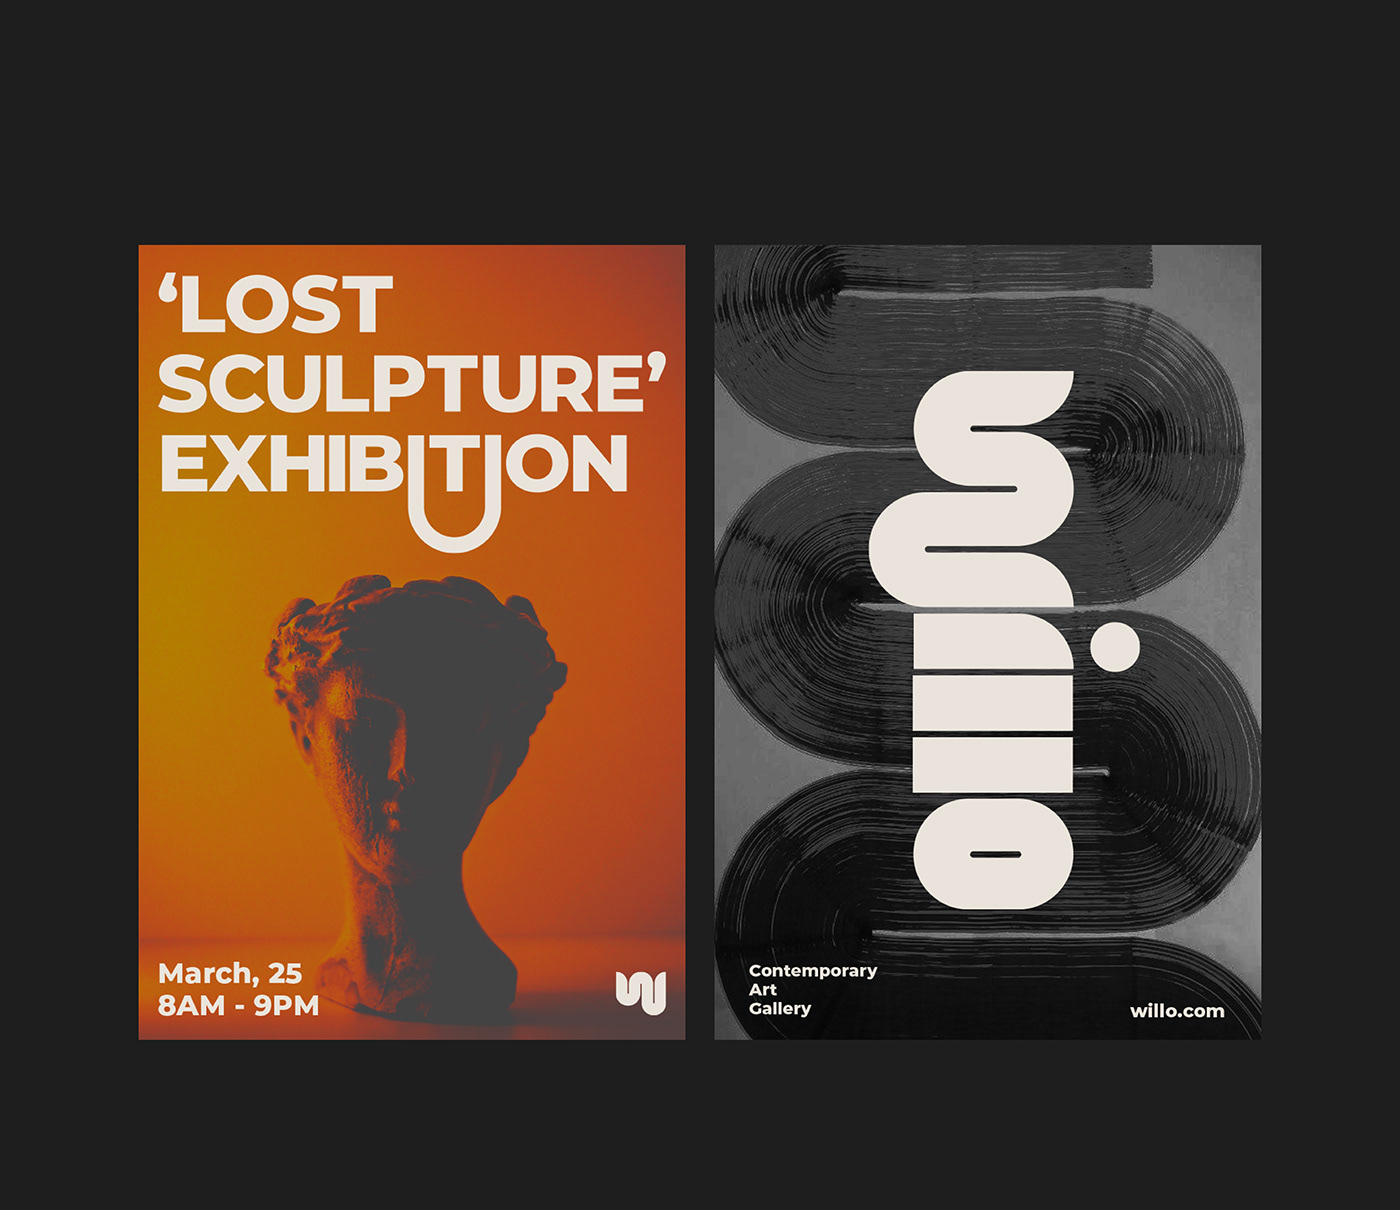 Exhibition announcment posters